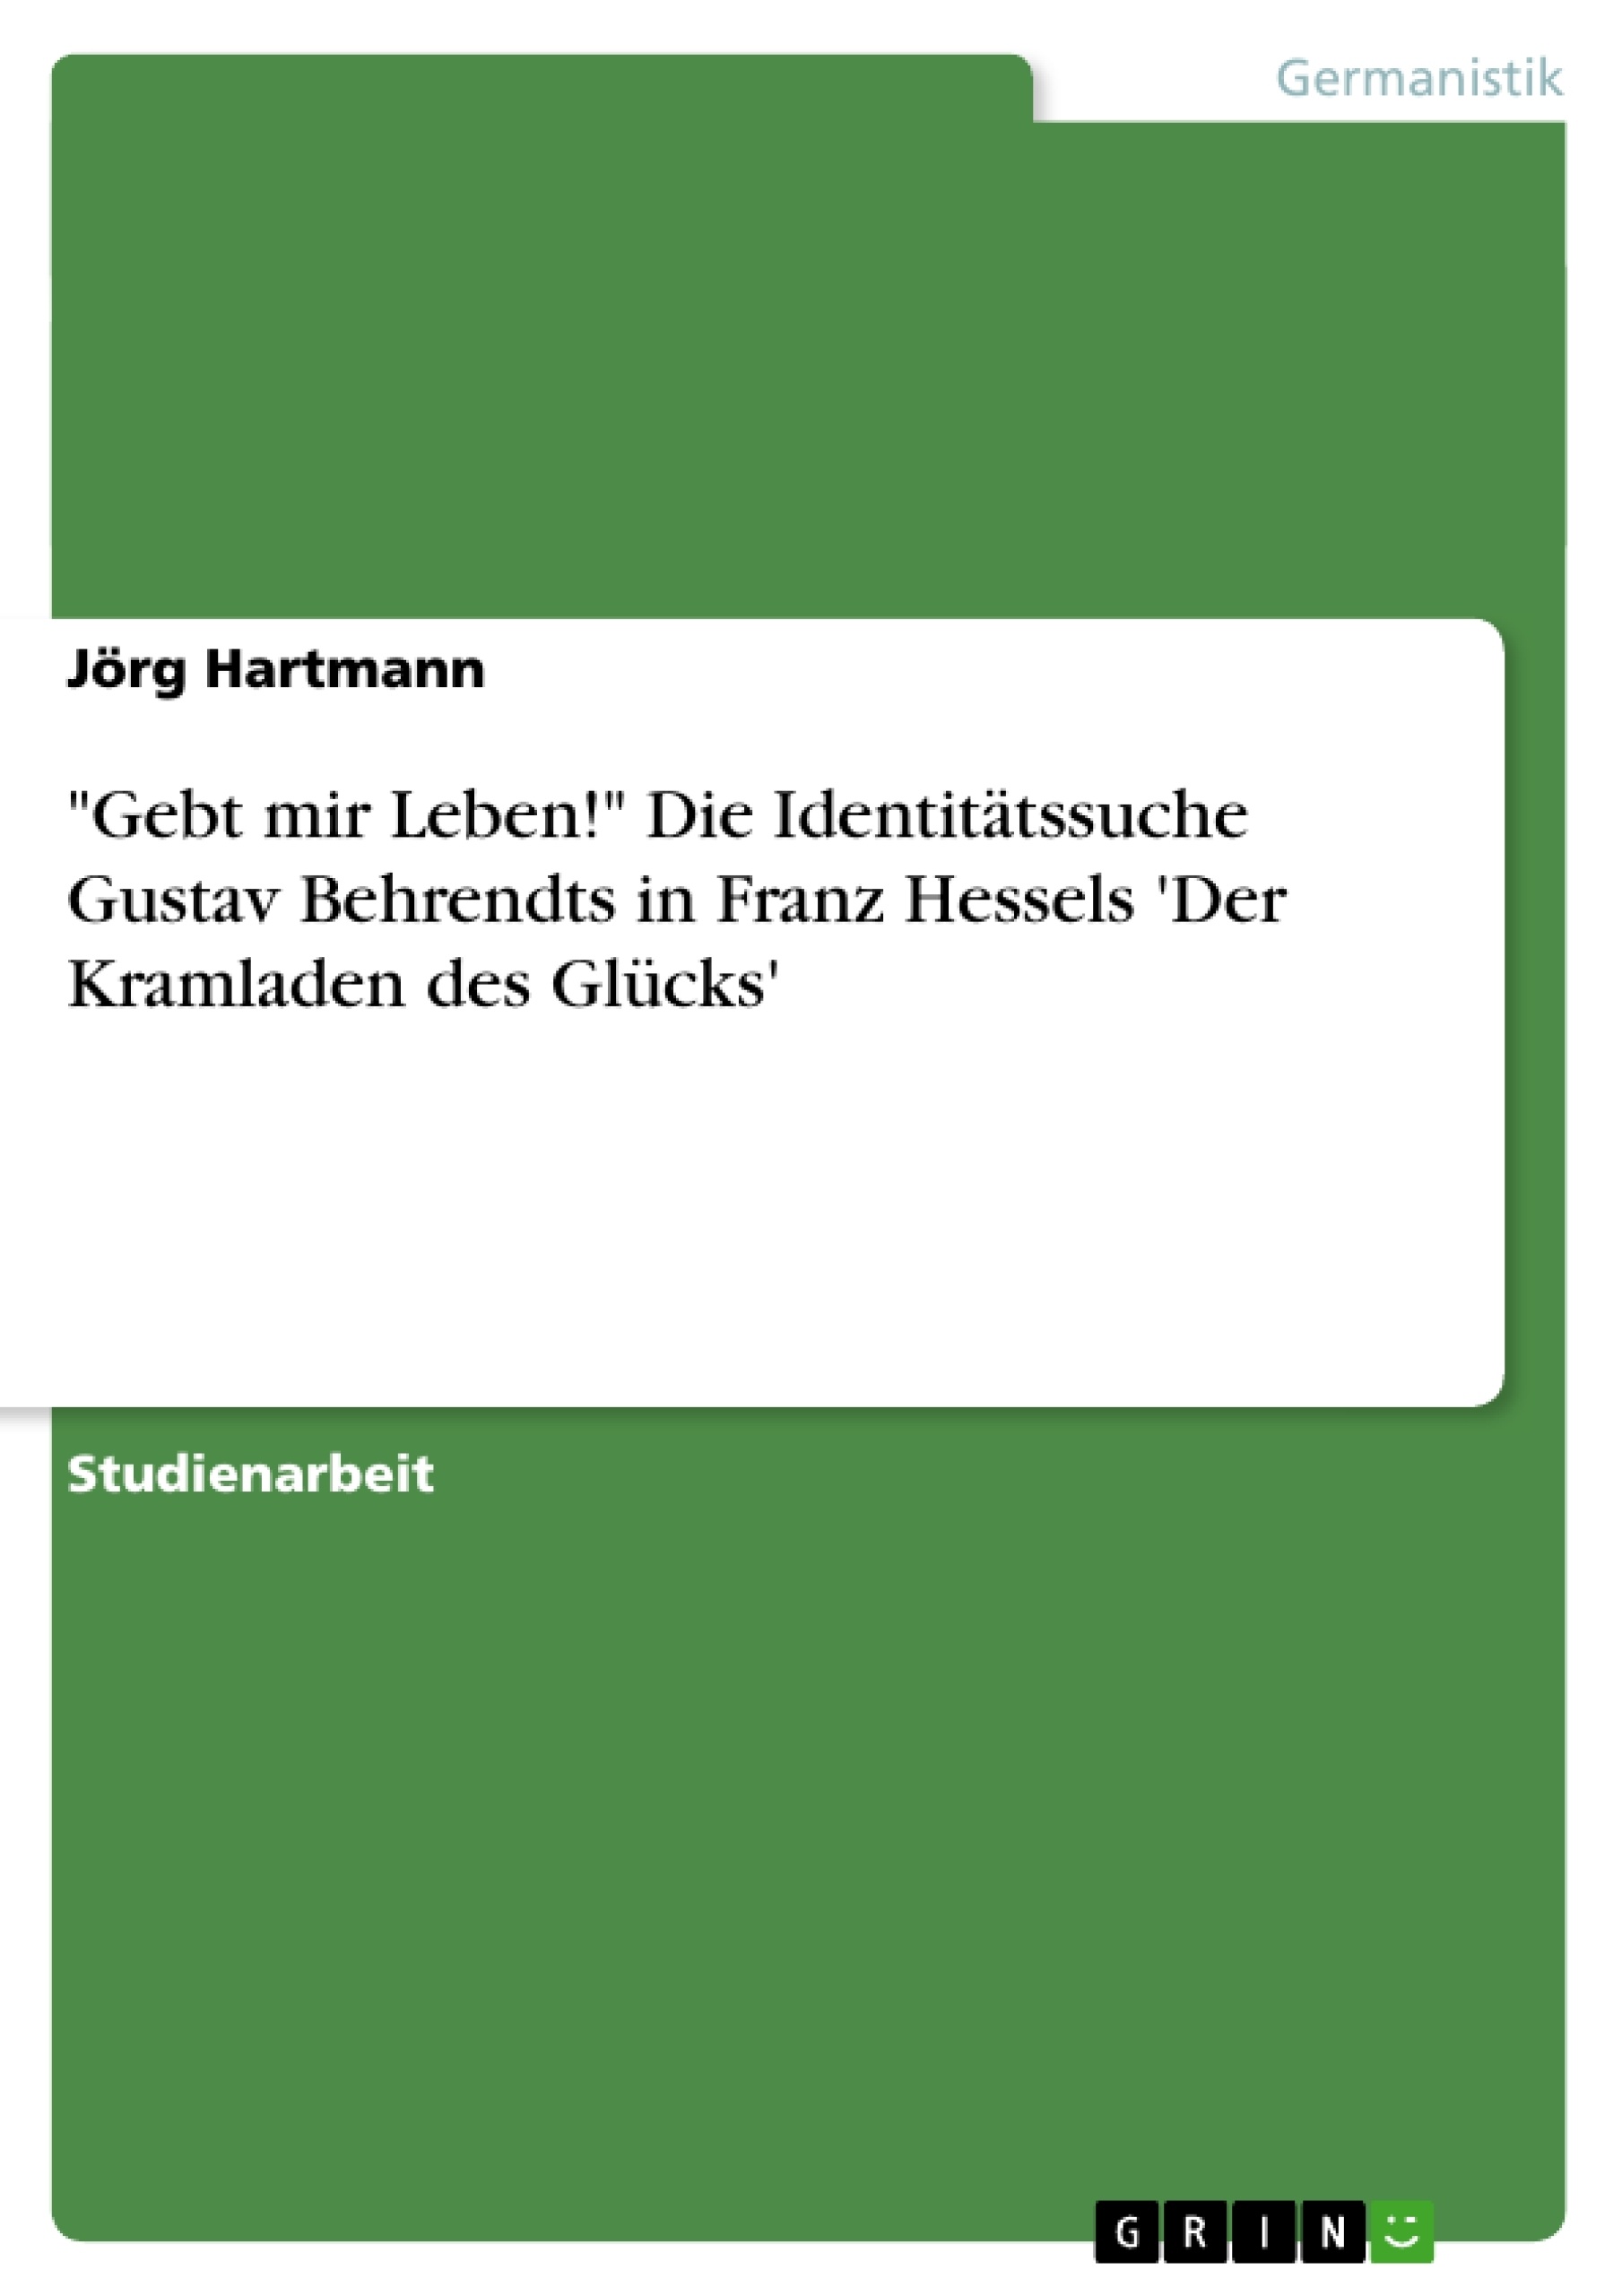 Título: "Gebt mir Leben!" Die Identitätssuche Gustav Behrendts in Franz Hessels 'Der Kramladen des Glücks'